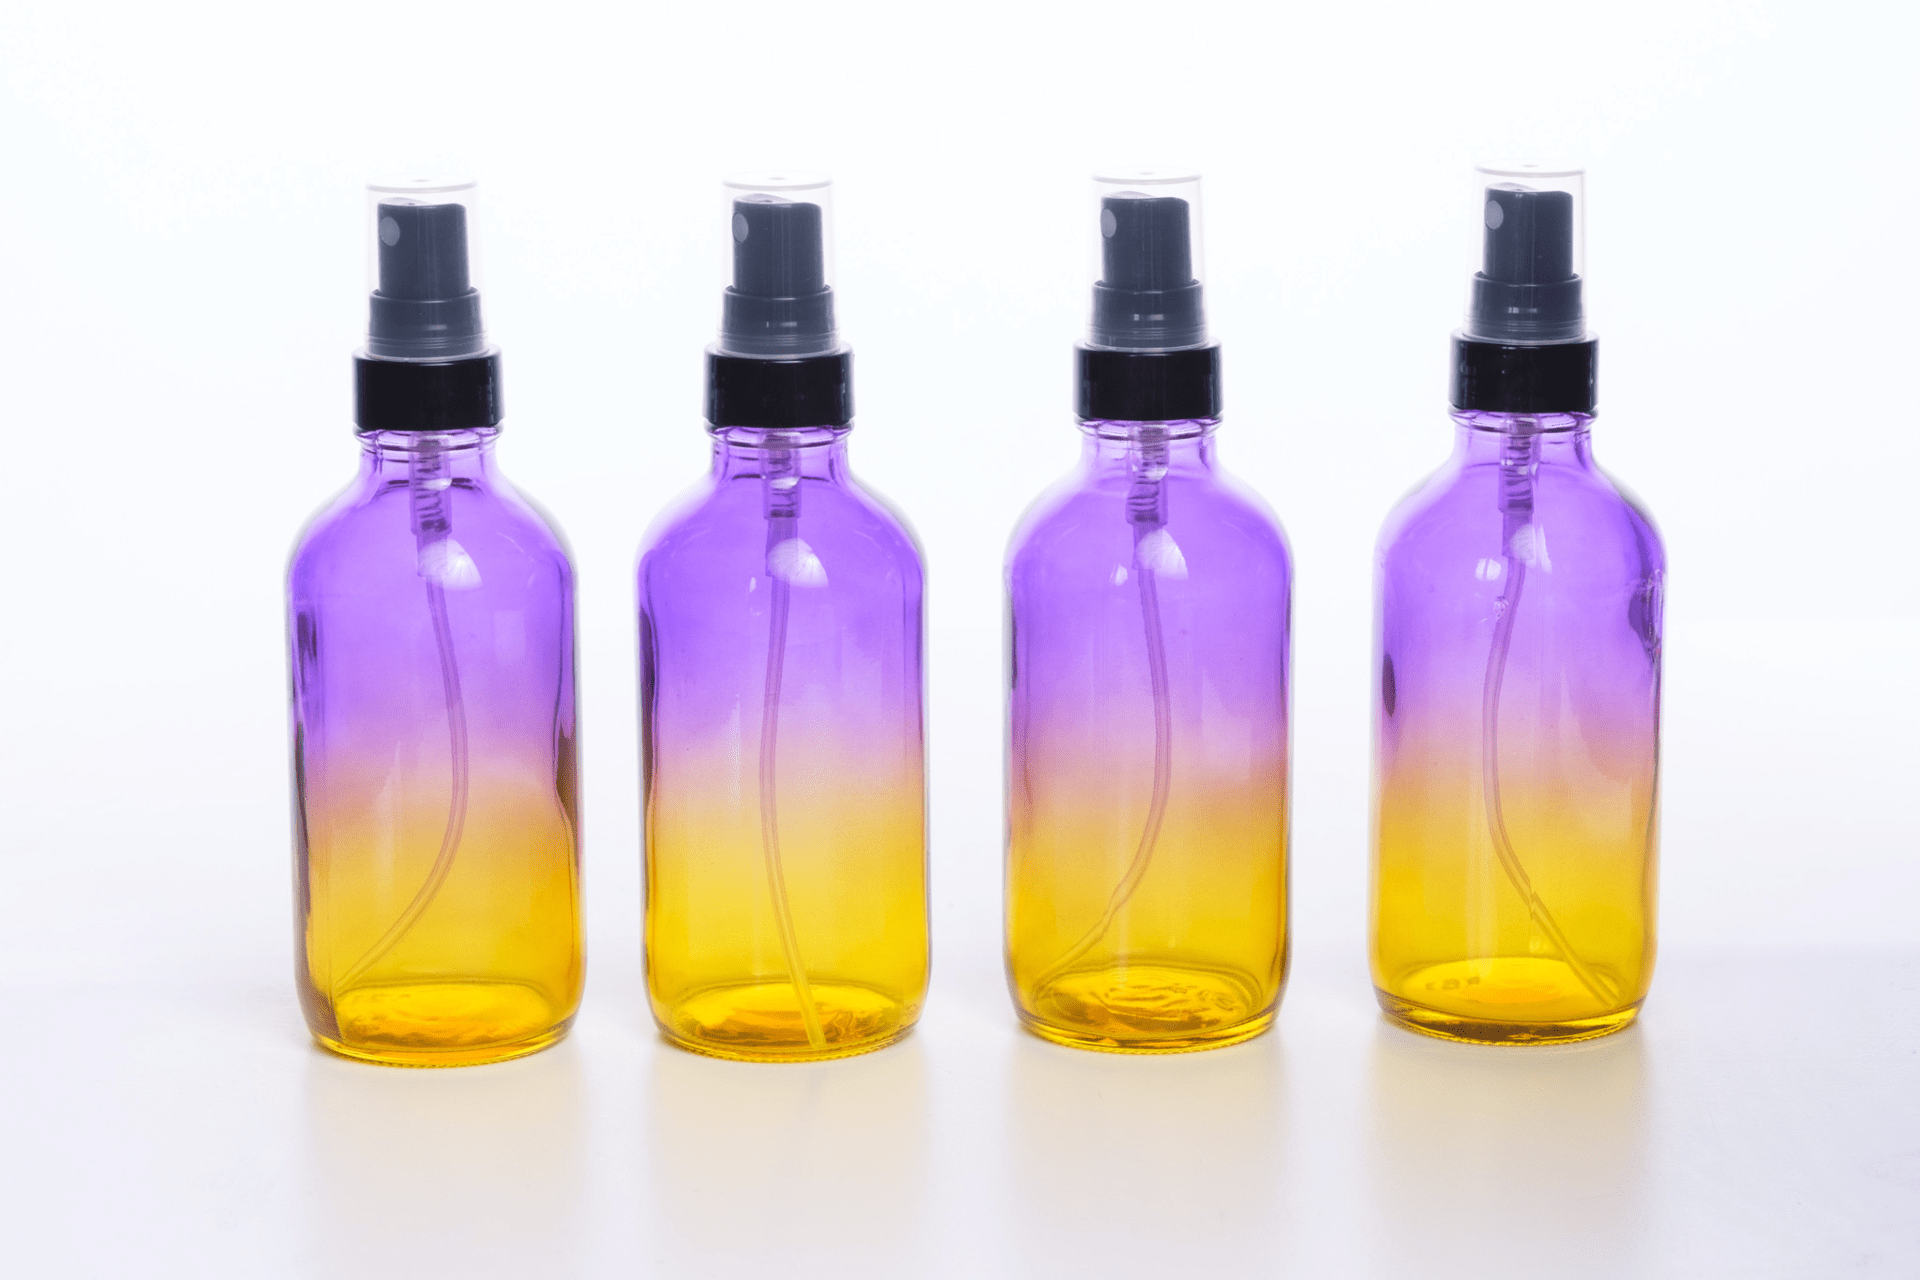 Ombre Glass Spray Bottles (4pk) - Oil Life